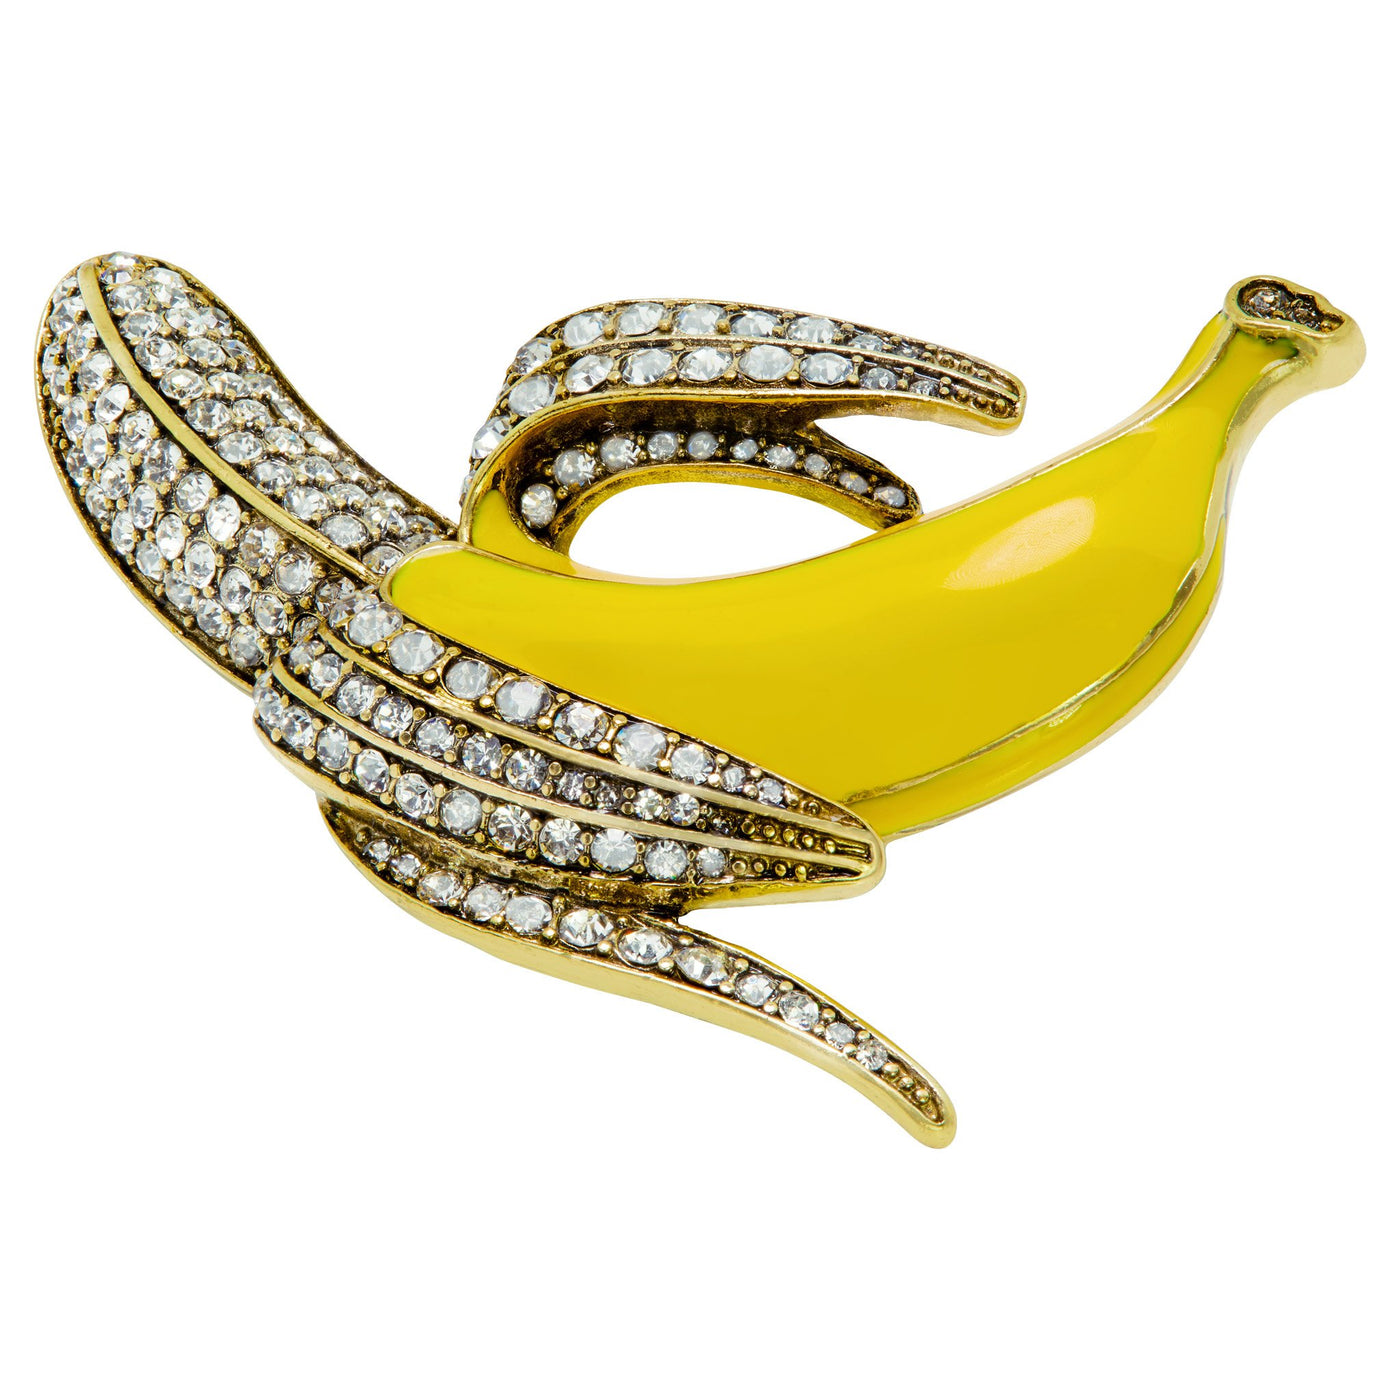 Heidi Daus®"The Real Peel" Enamel Crystal Banana Pin - Heidi Daus®